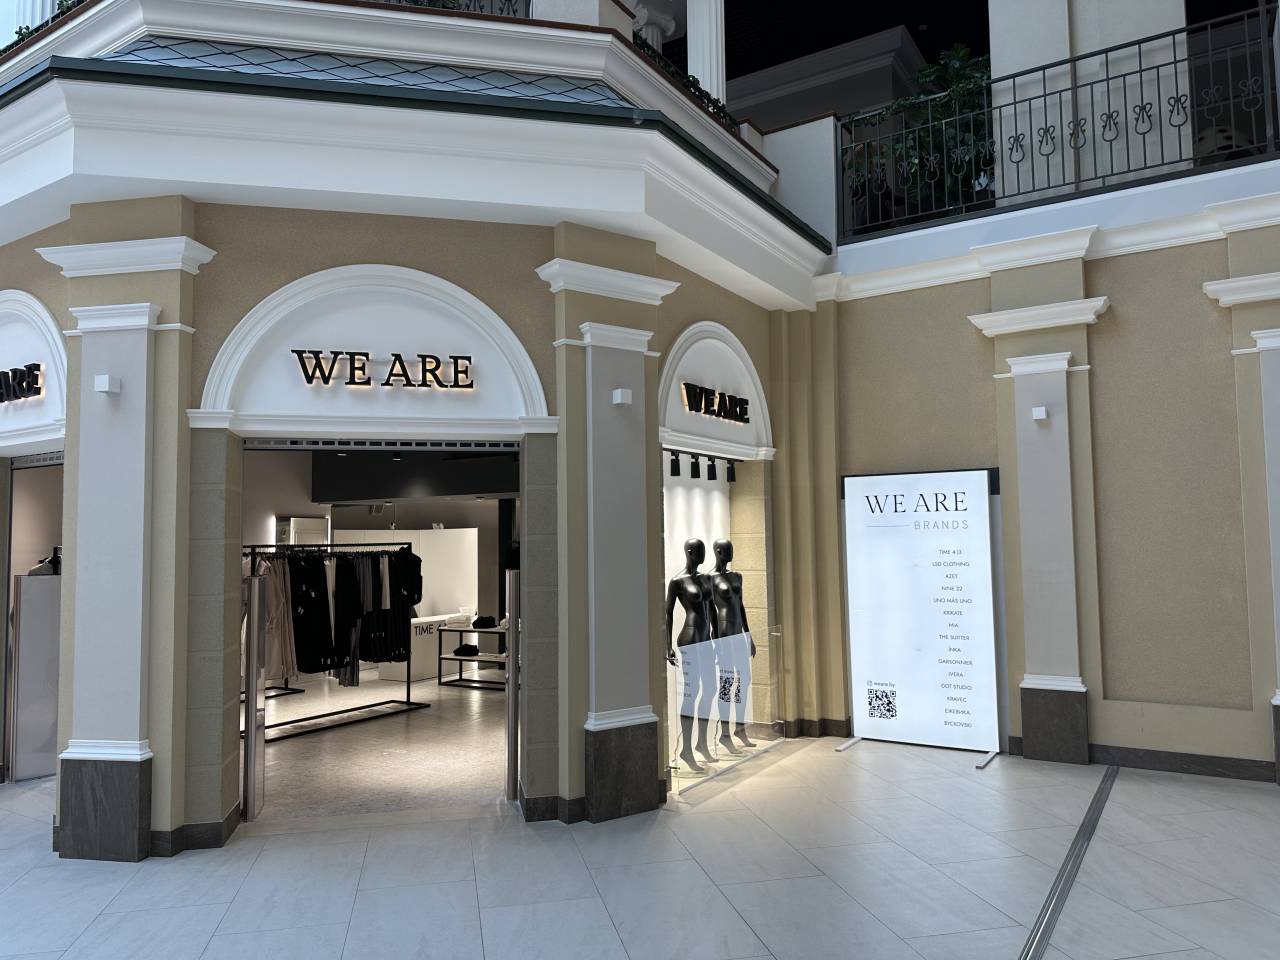 400 квадратных метров и 15 локальных белорусских брендов. В Гродно открывается новое шопинг-пространство WEARE